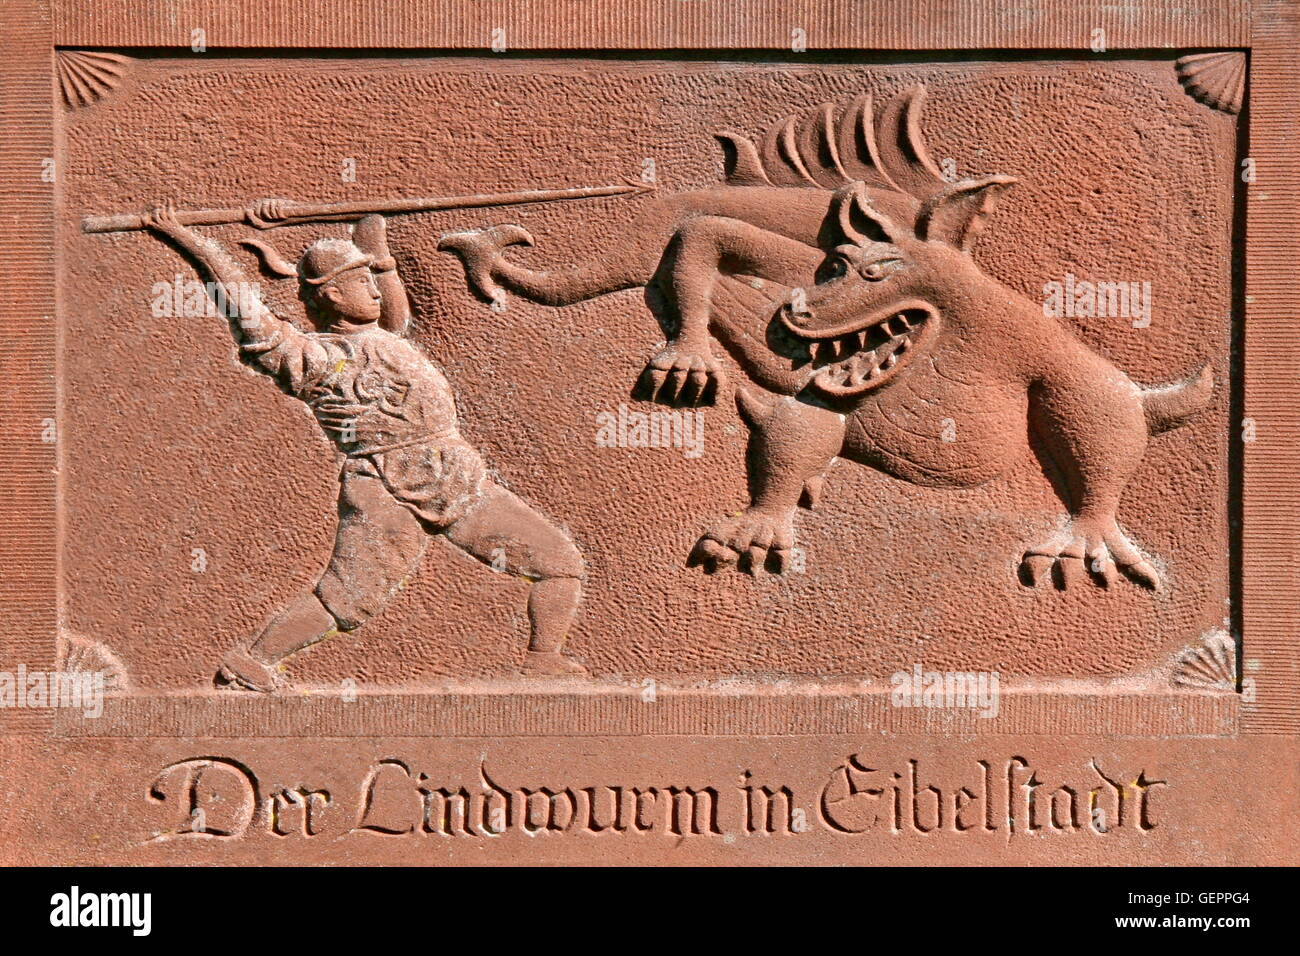 Geografía / viajes, Alemania, Baviera, Eibelstadt, alivio en la muralla de la ciudad, 'Der Lindwurm en Eibelstadt' (la de Eibelstadt Lindowrm) Foto de stock